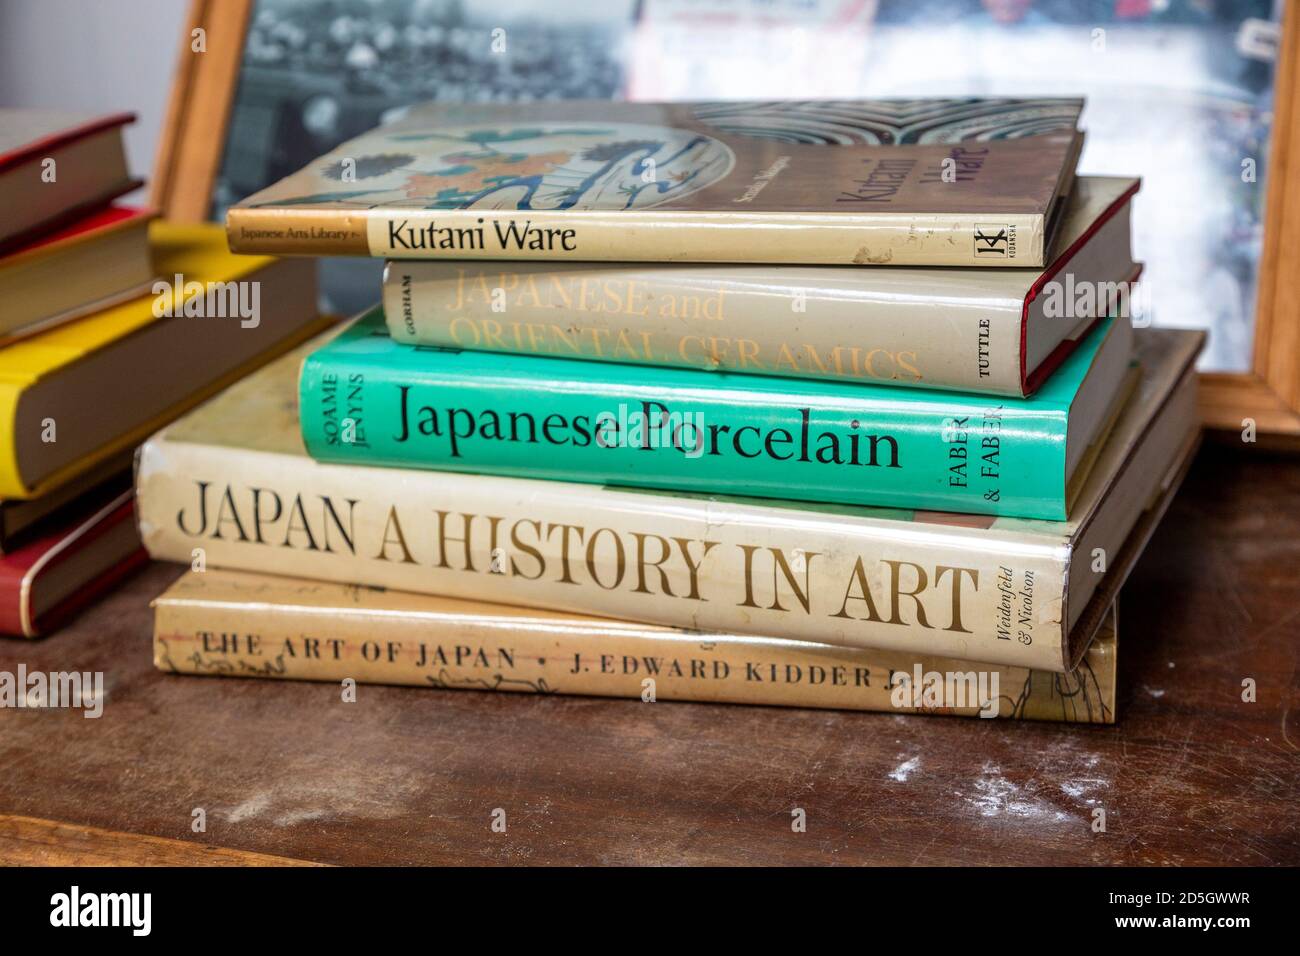 Libros sobre arte japonés y cerámica en exhibición en la sala de venta de subastas de liquidación de casas, Reino Unido Foto de stock